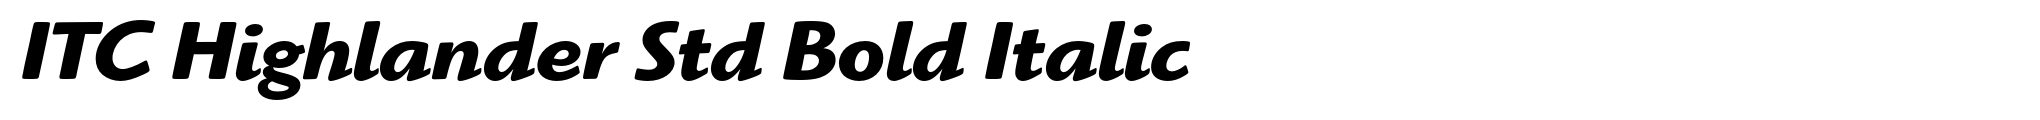 ITC Highlander Std Bold Italic image